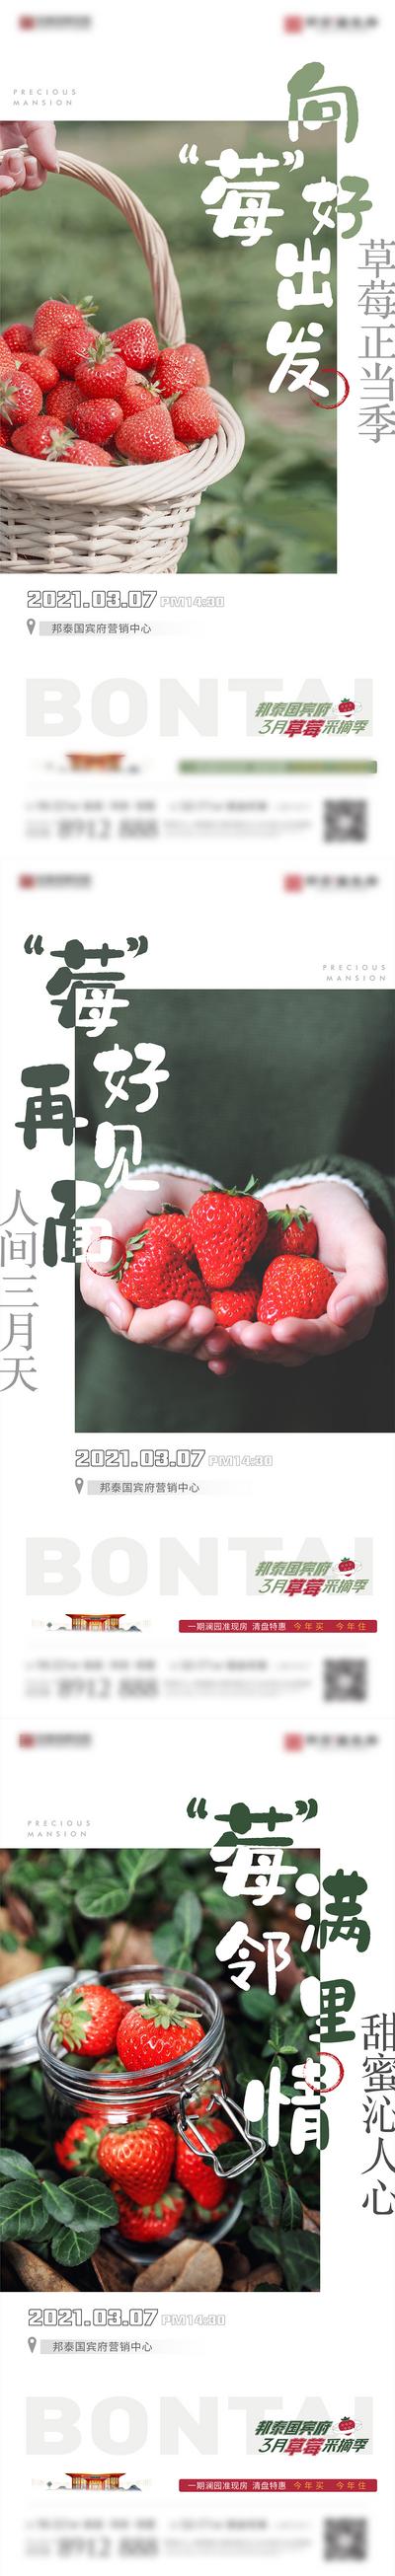 【南门网】广告 海报 地产 采摘 草莓 水果 系列